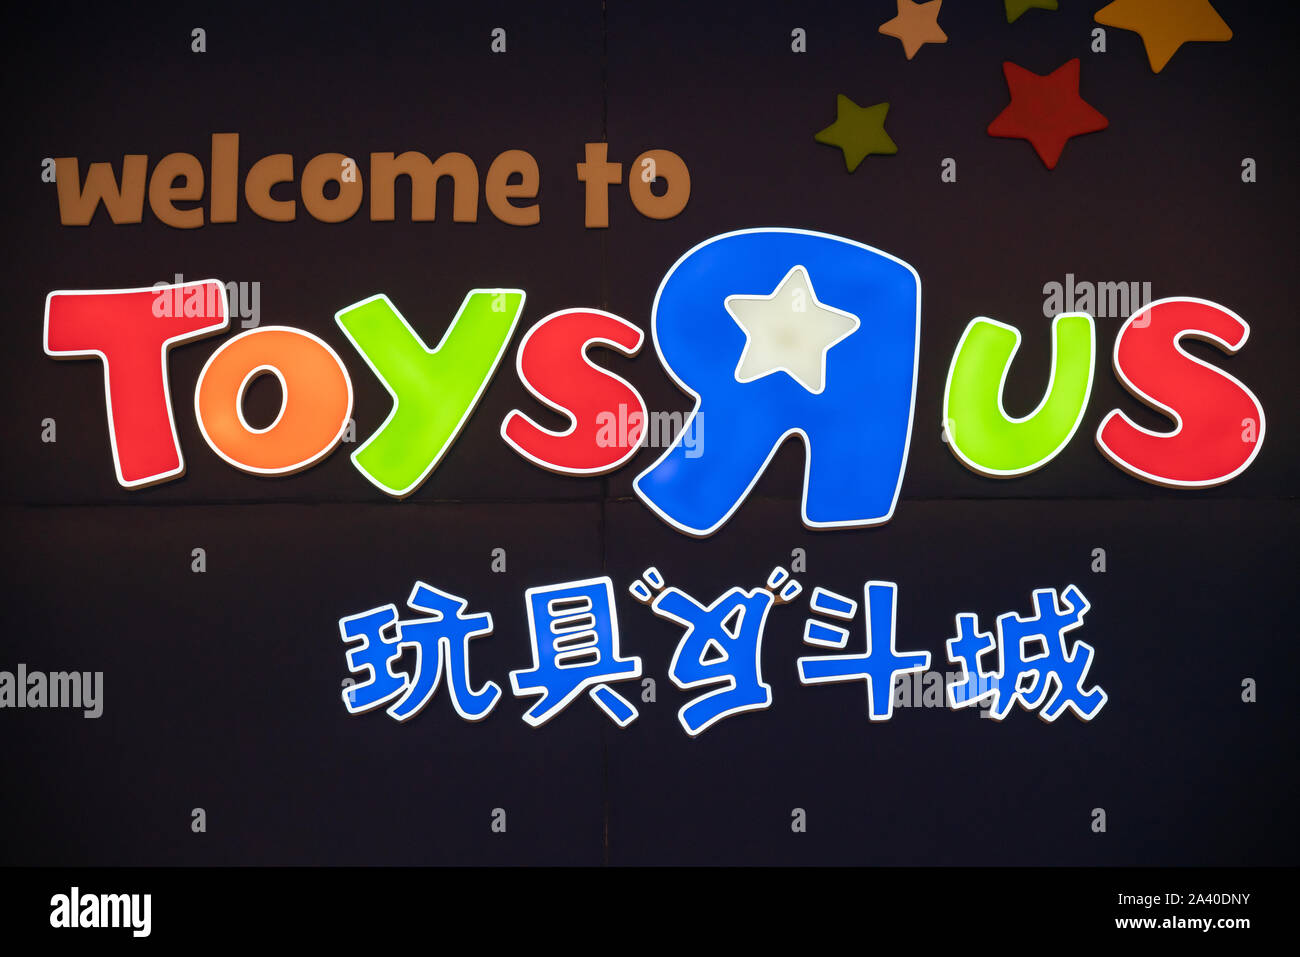 American toy, abbigliamento, video game, e baby prodotto rivenditore Toys "R" Us logo che si vede in Shenzhen. Foto Stock